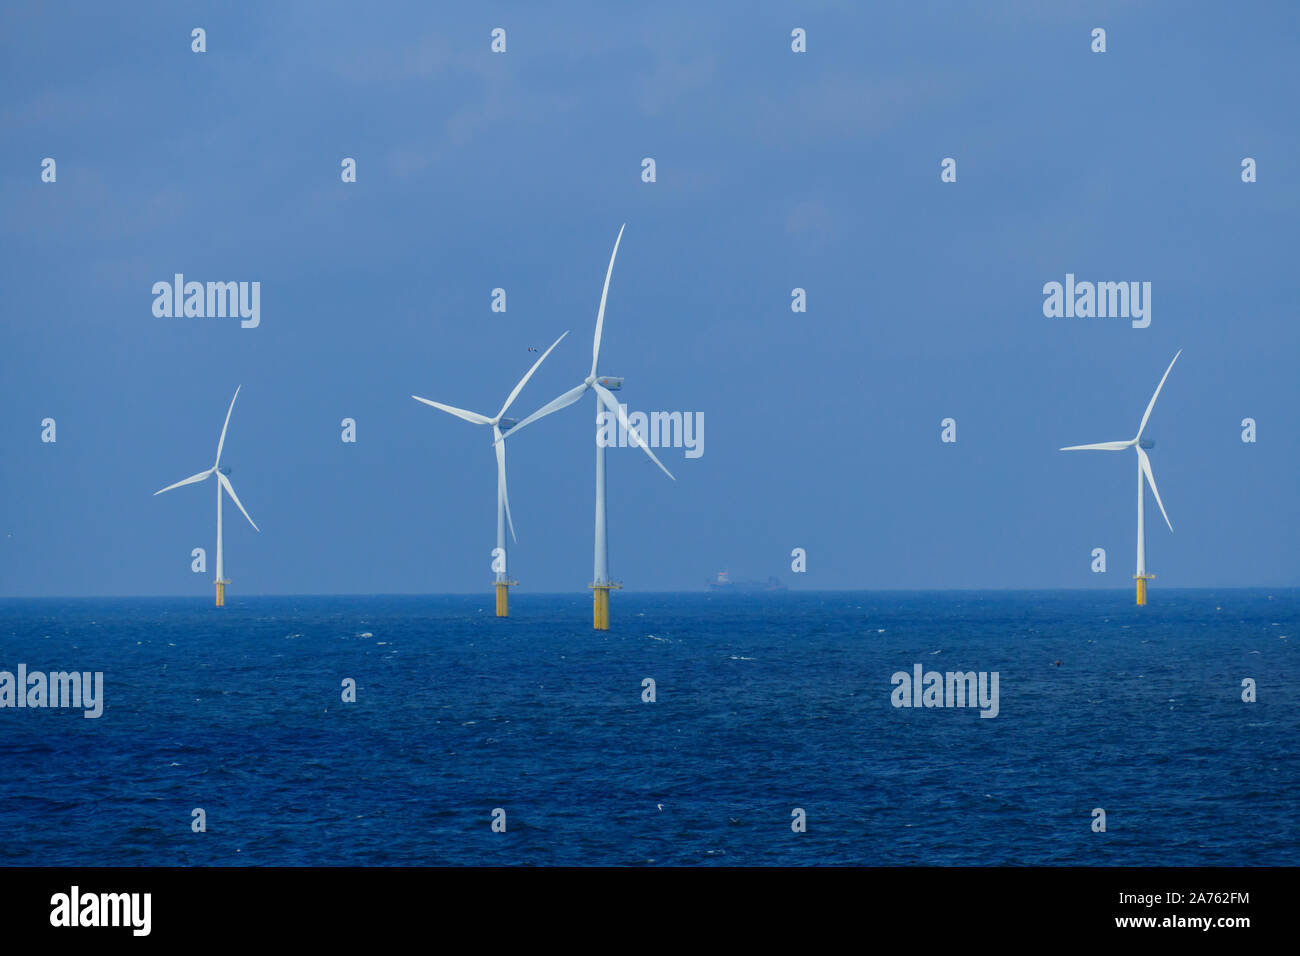 Windpark offshore, Windräder zuer Energiegewinnung in der Nordsee Foto Stock